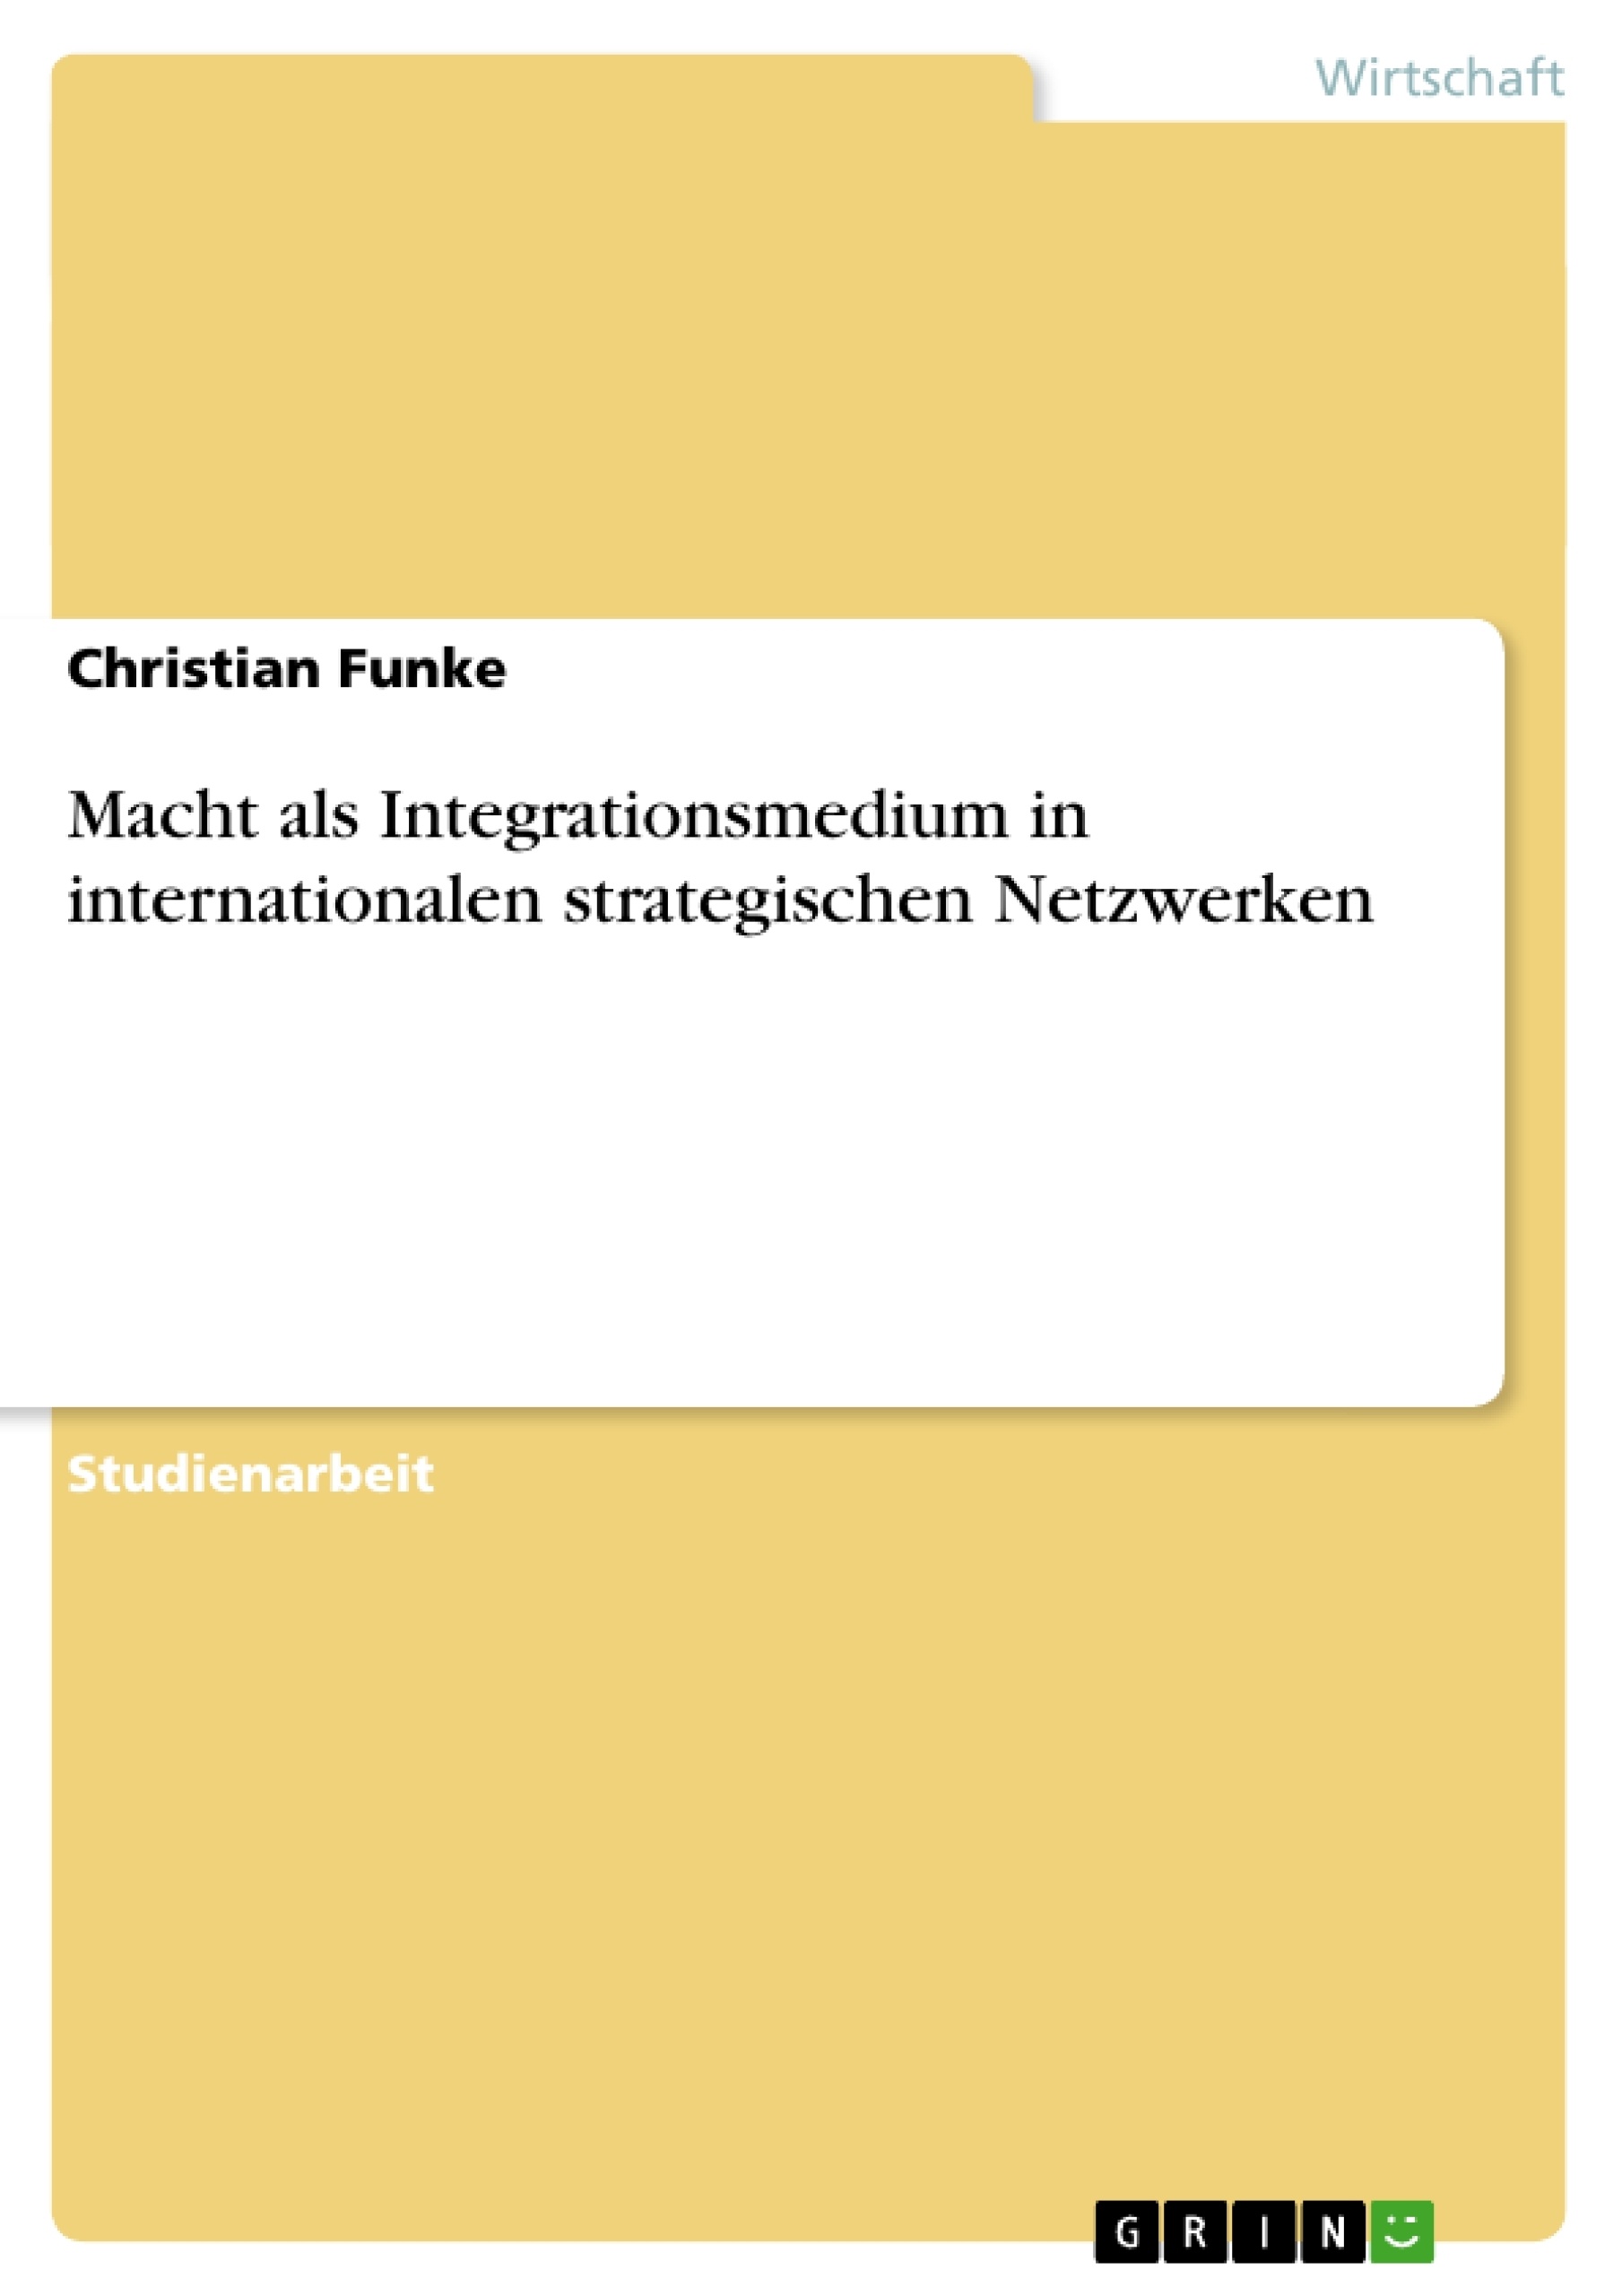 Título: Macht als Integrationsmedium in internationalen strategischen Netzwerken